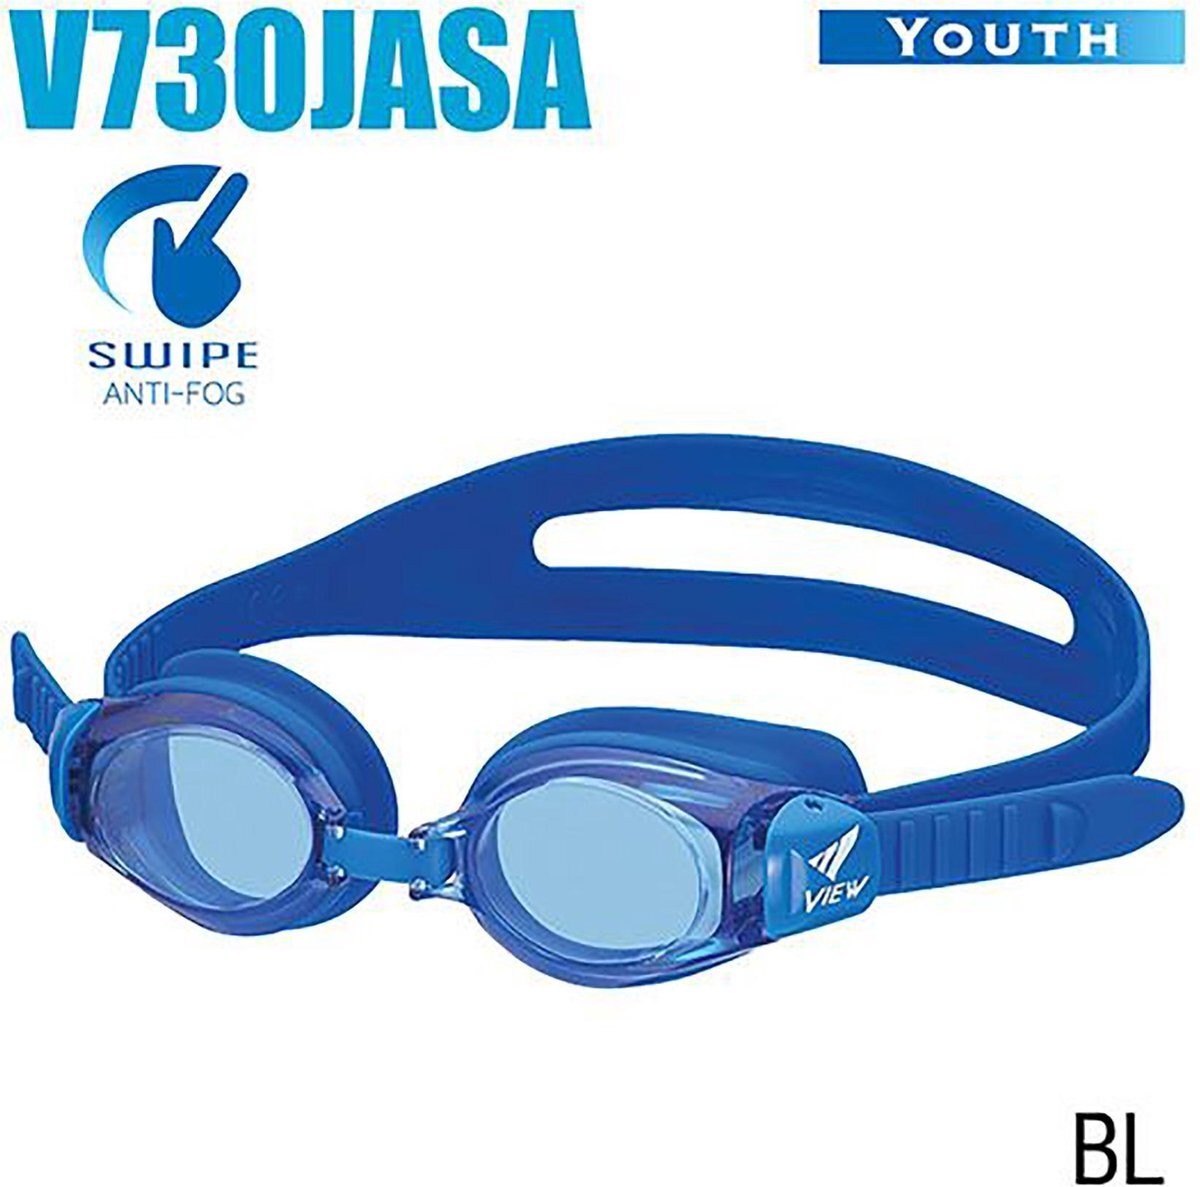 View Youth (leeftijd 4-9 jaar) kinder zwembril met SWIPE technologie V730JASA-BL